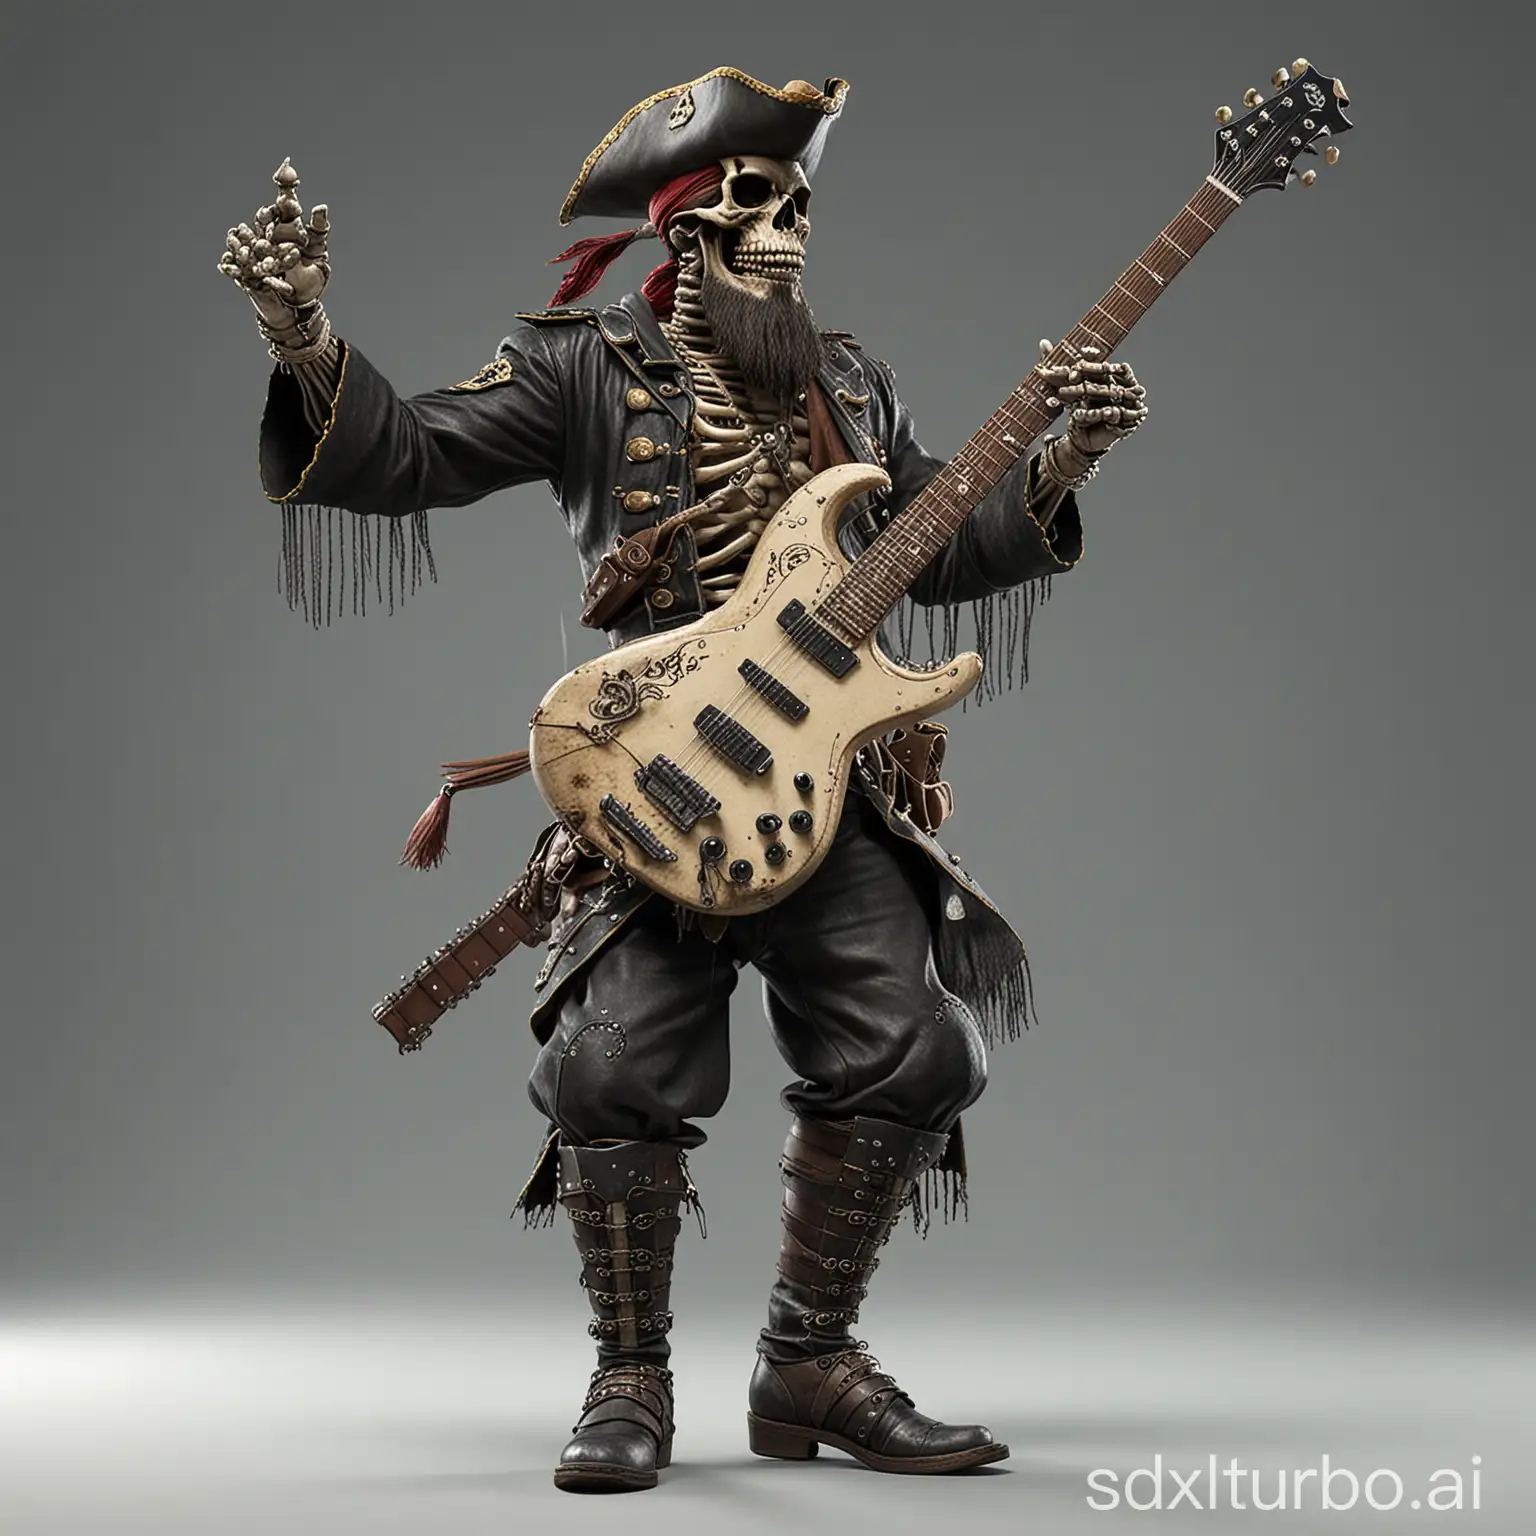 Dynamic-Skeleton-Pirate-Guitarist-Performing-High-Kung-Fu-Kick